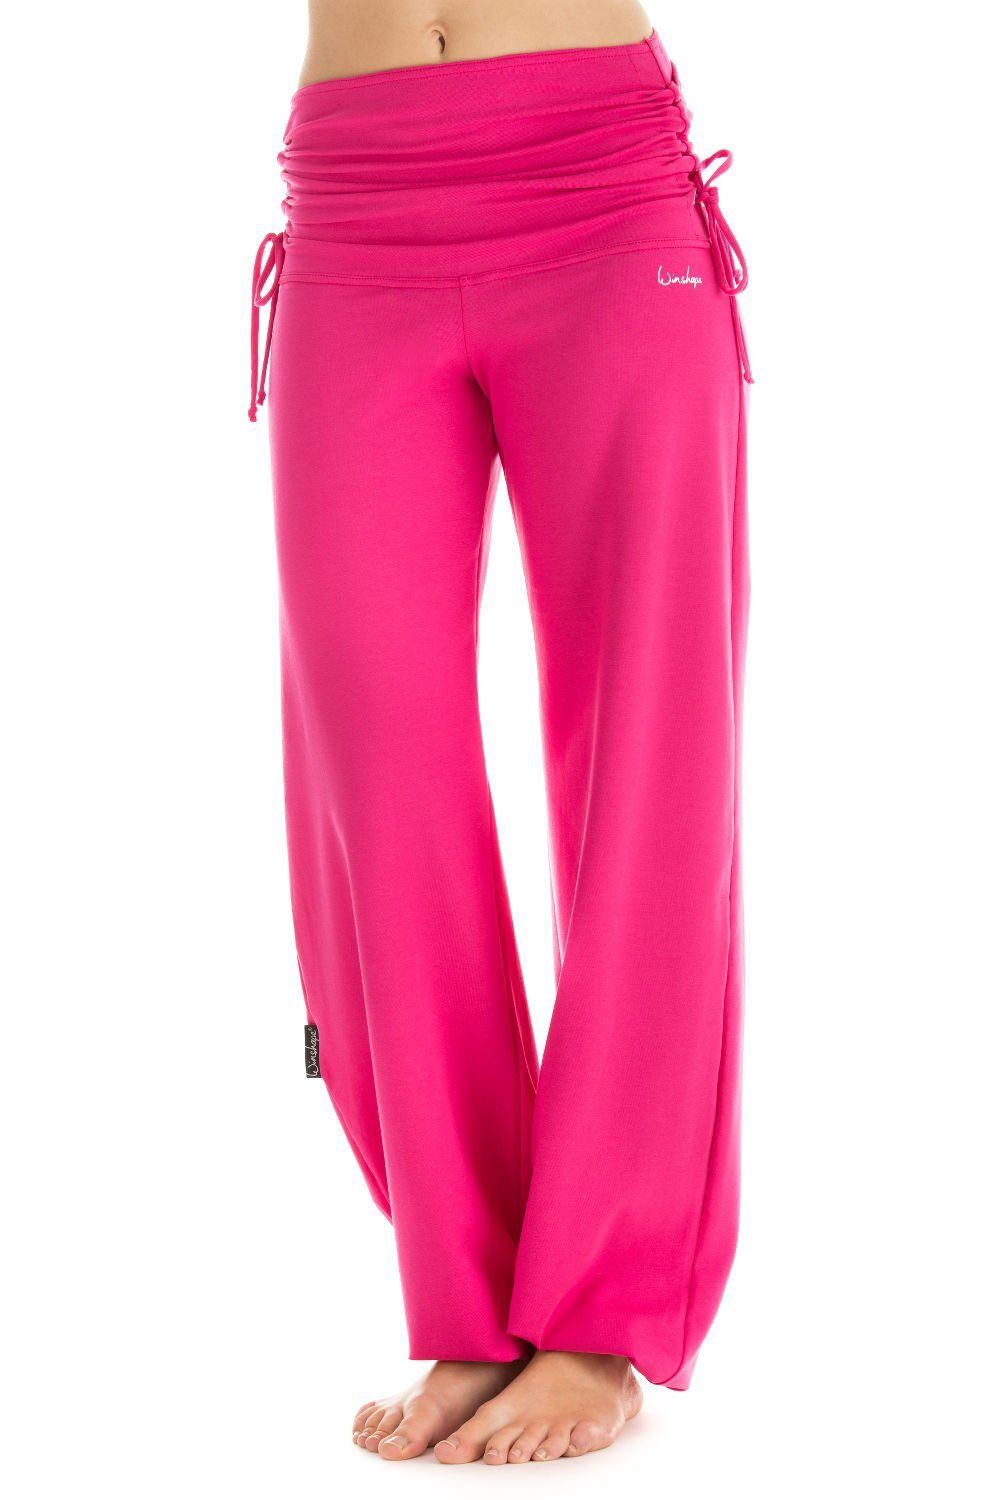 Winshape Sporthose »WH1« mit seitlicher Raffung, pink